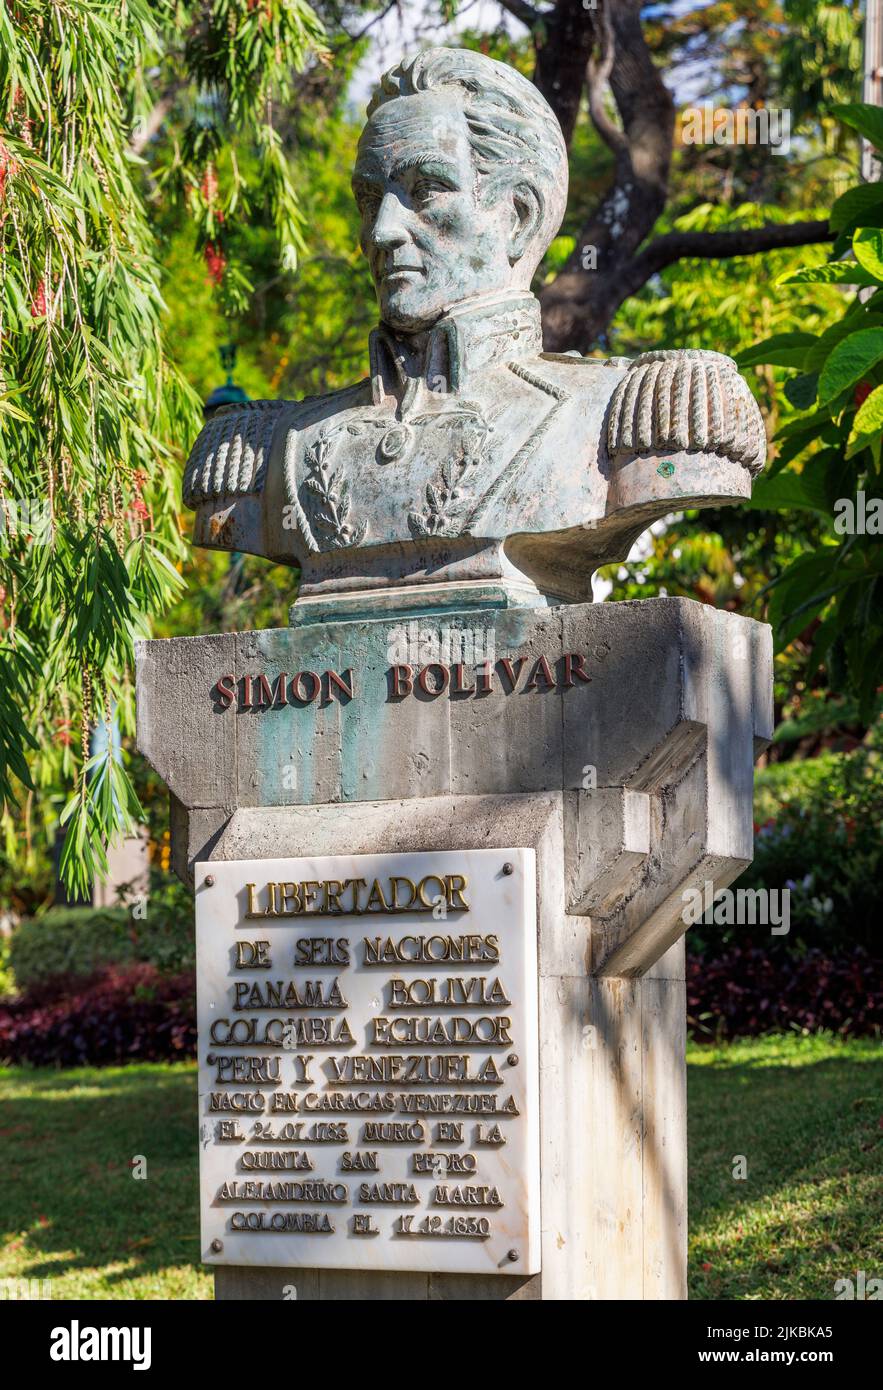 Buste du chef militaire et politique vénézuélien Simon Bolivar dans les jardins municipaux de Funchal, Madère, Portugal Banque D'Images